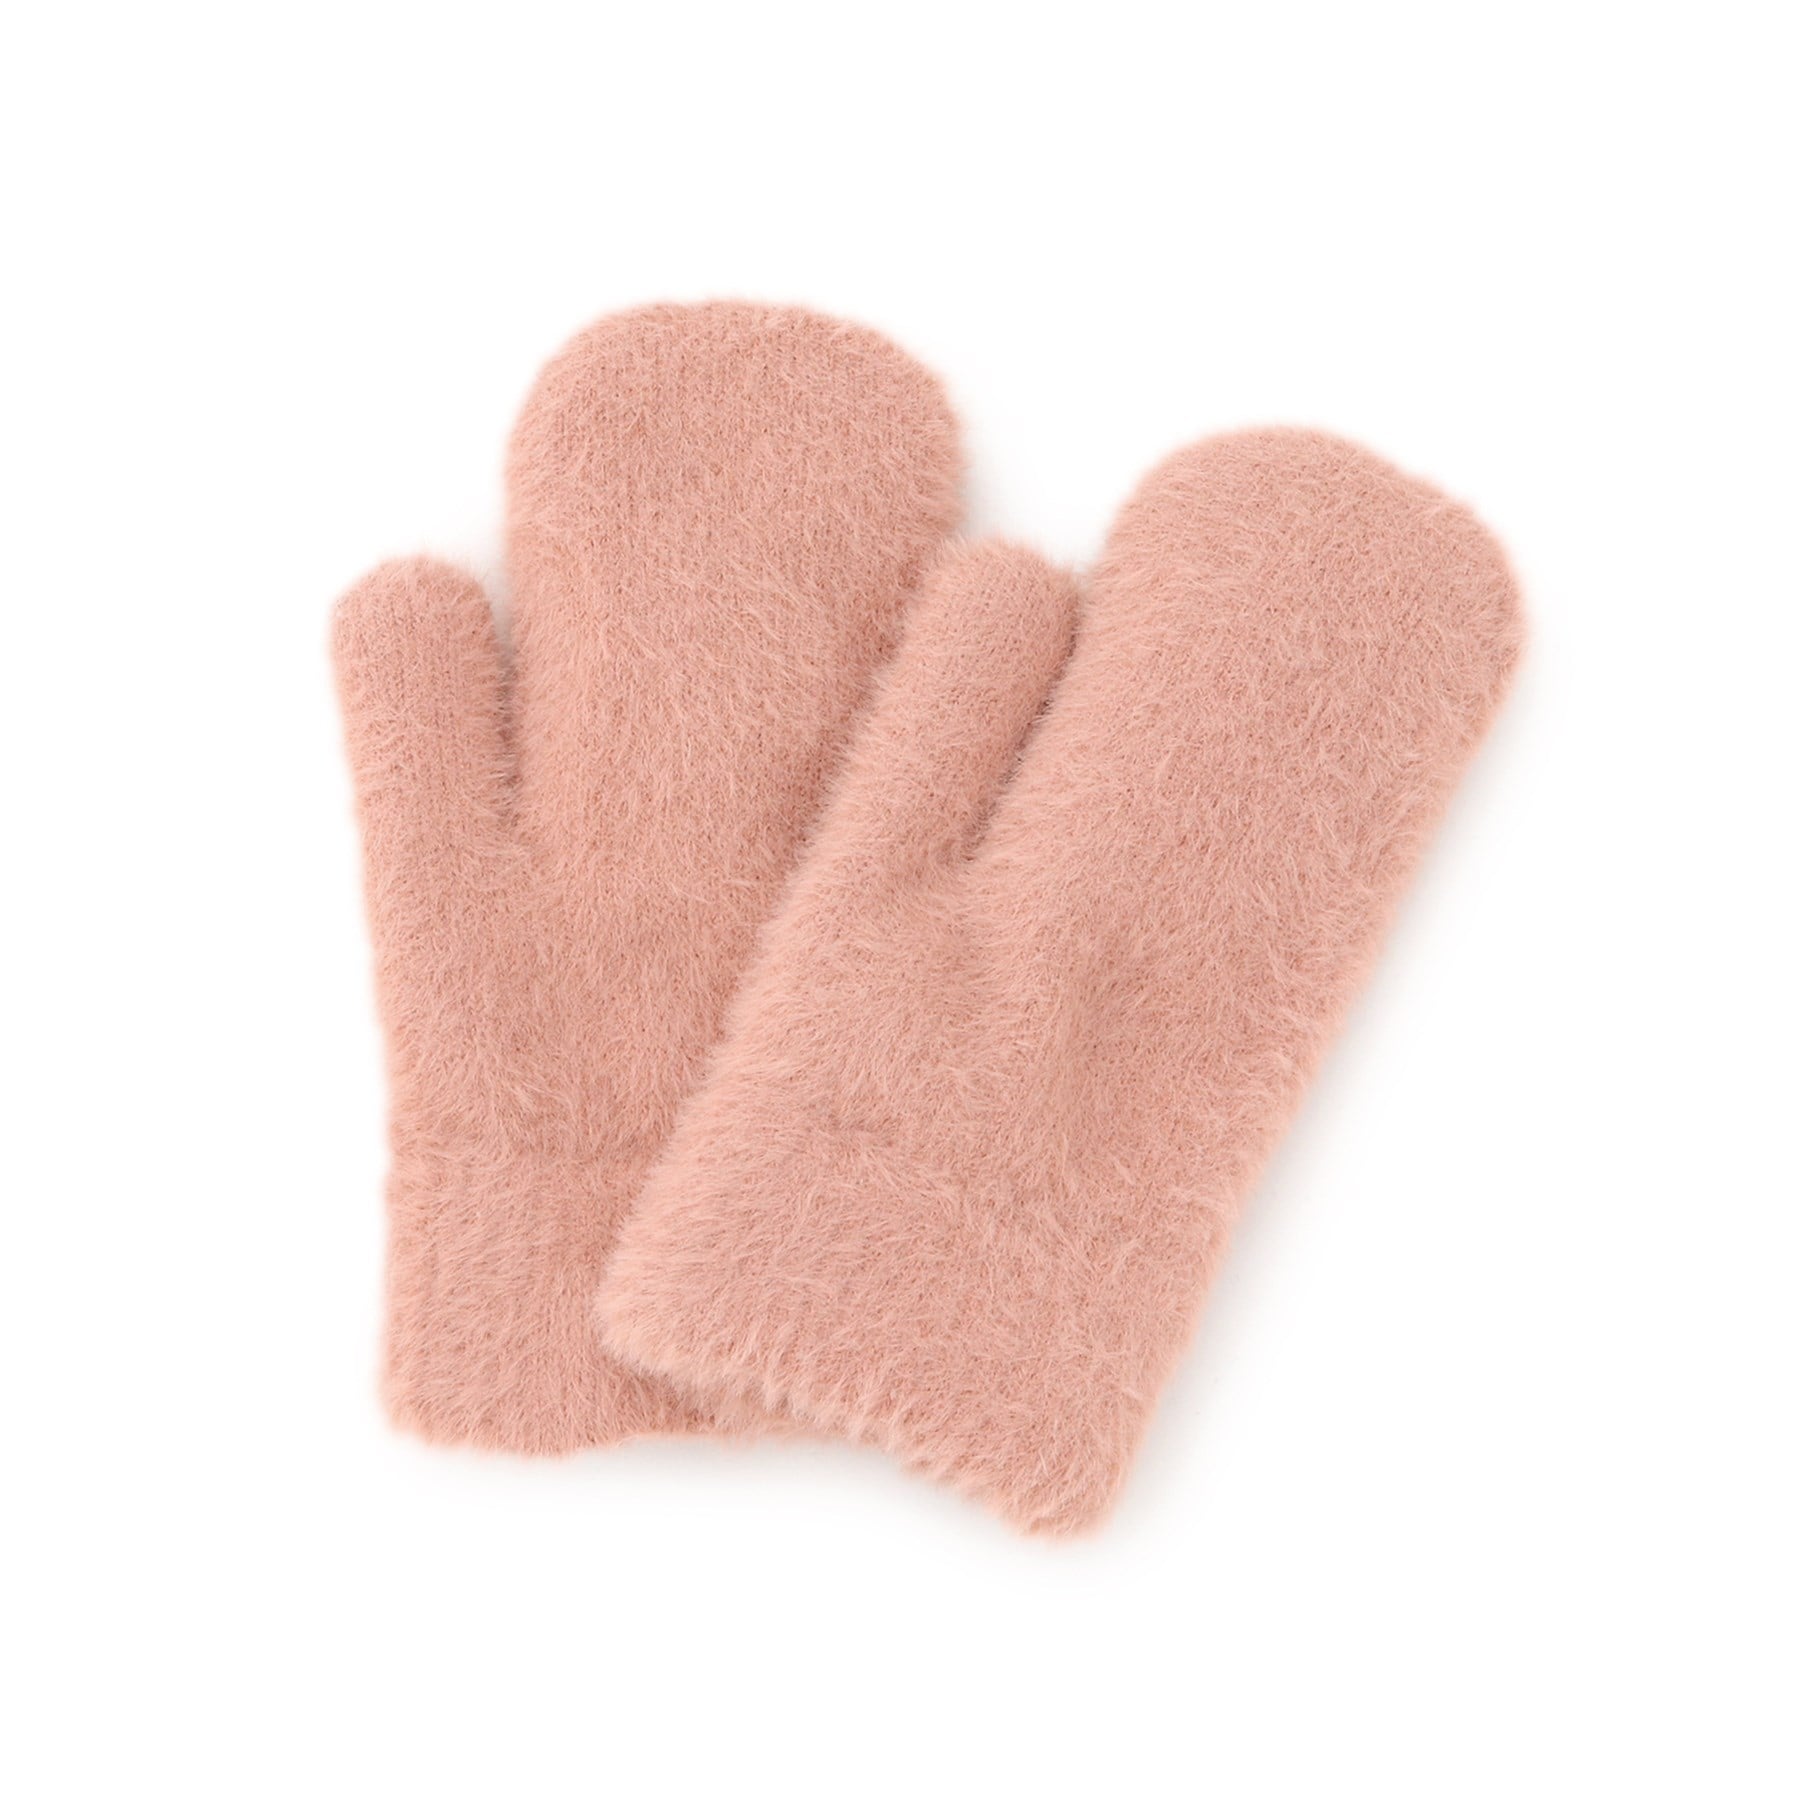 オーバー タッシェ(Ober Tashe)のフラッフィーシャギーミトン 手袋 ピンク(072)